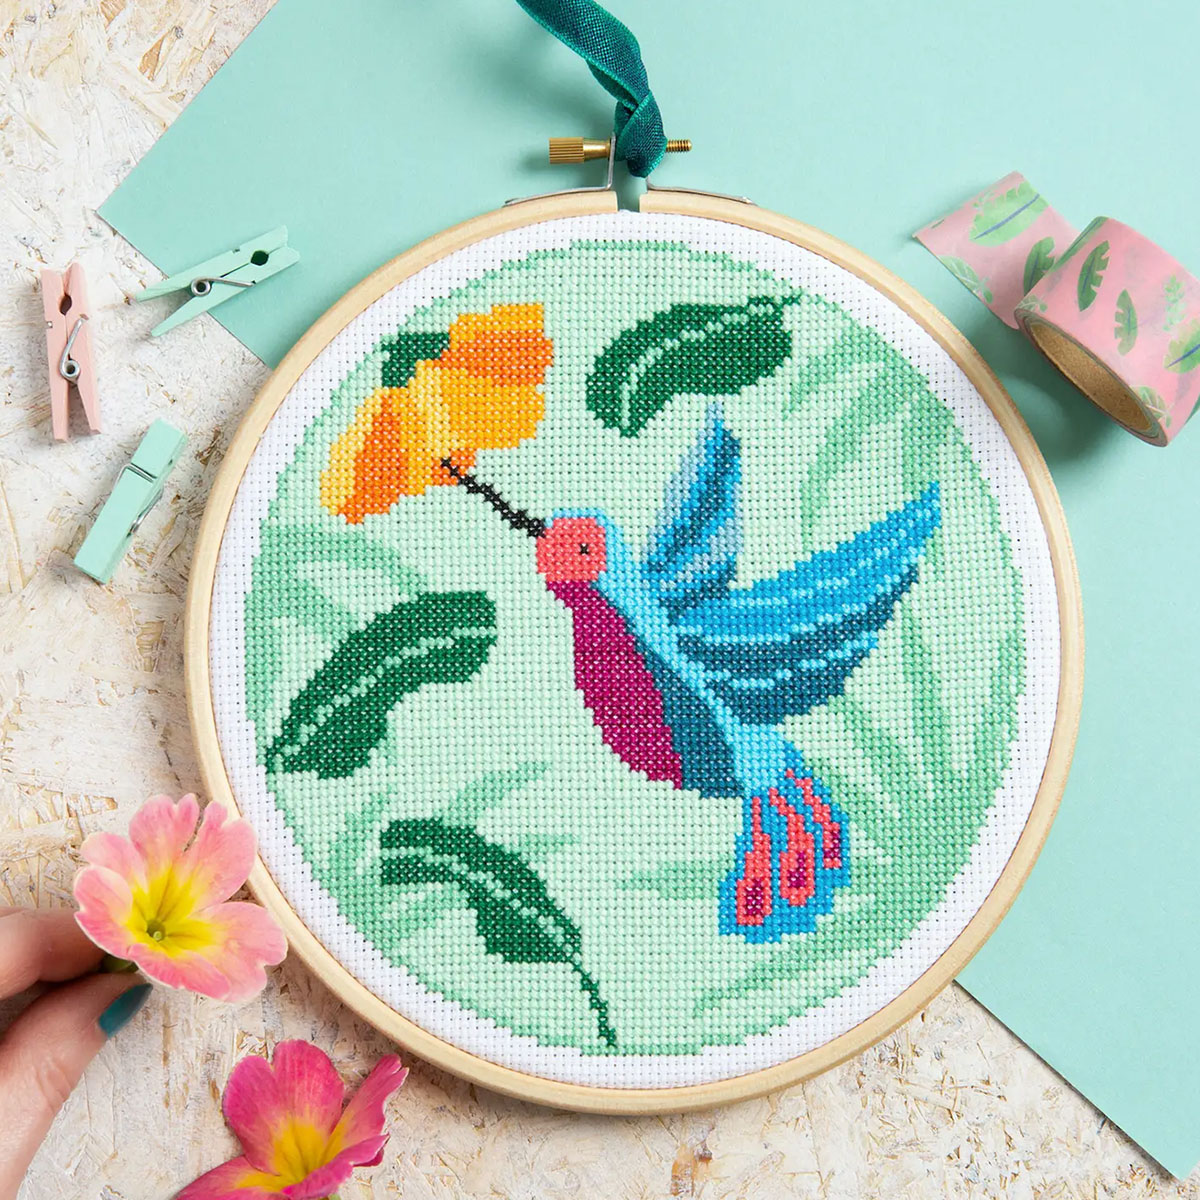 Hummingbird Cross Stitch Kit